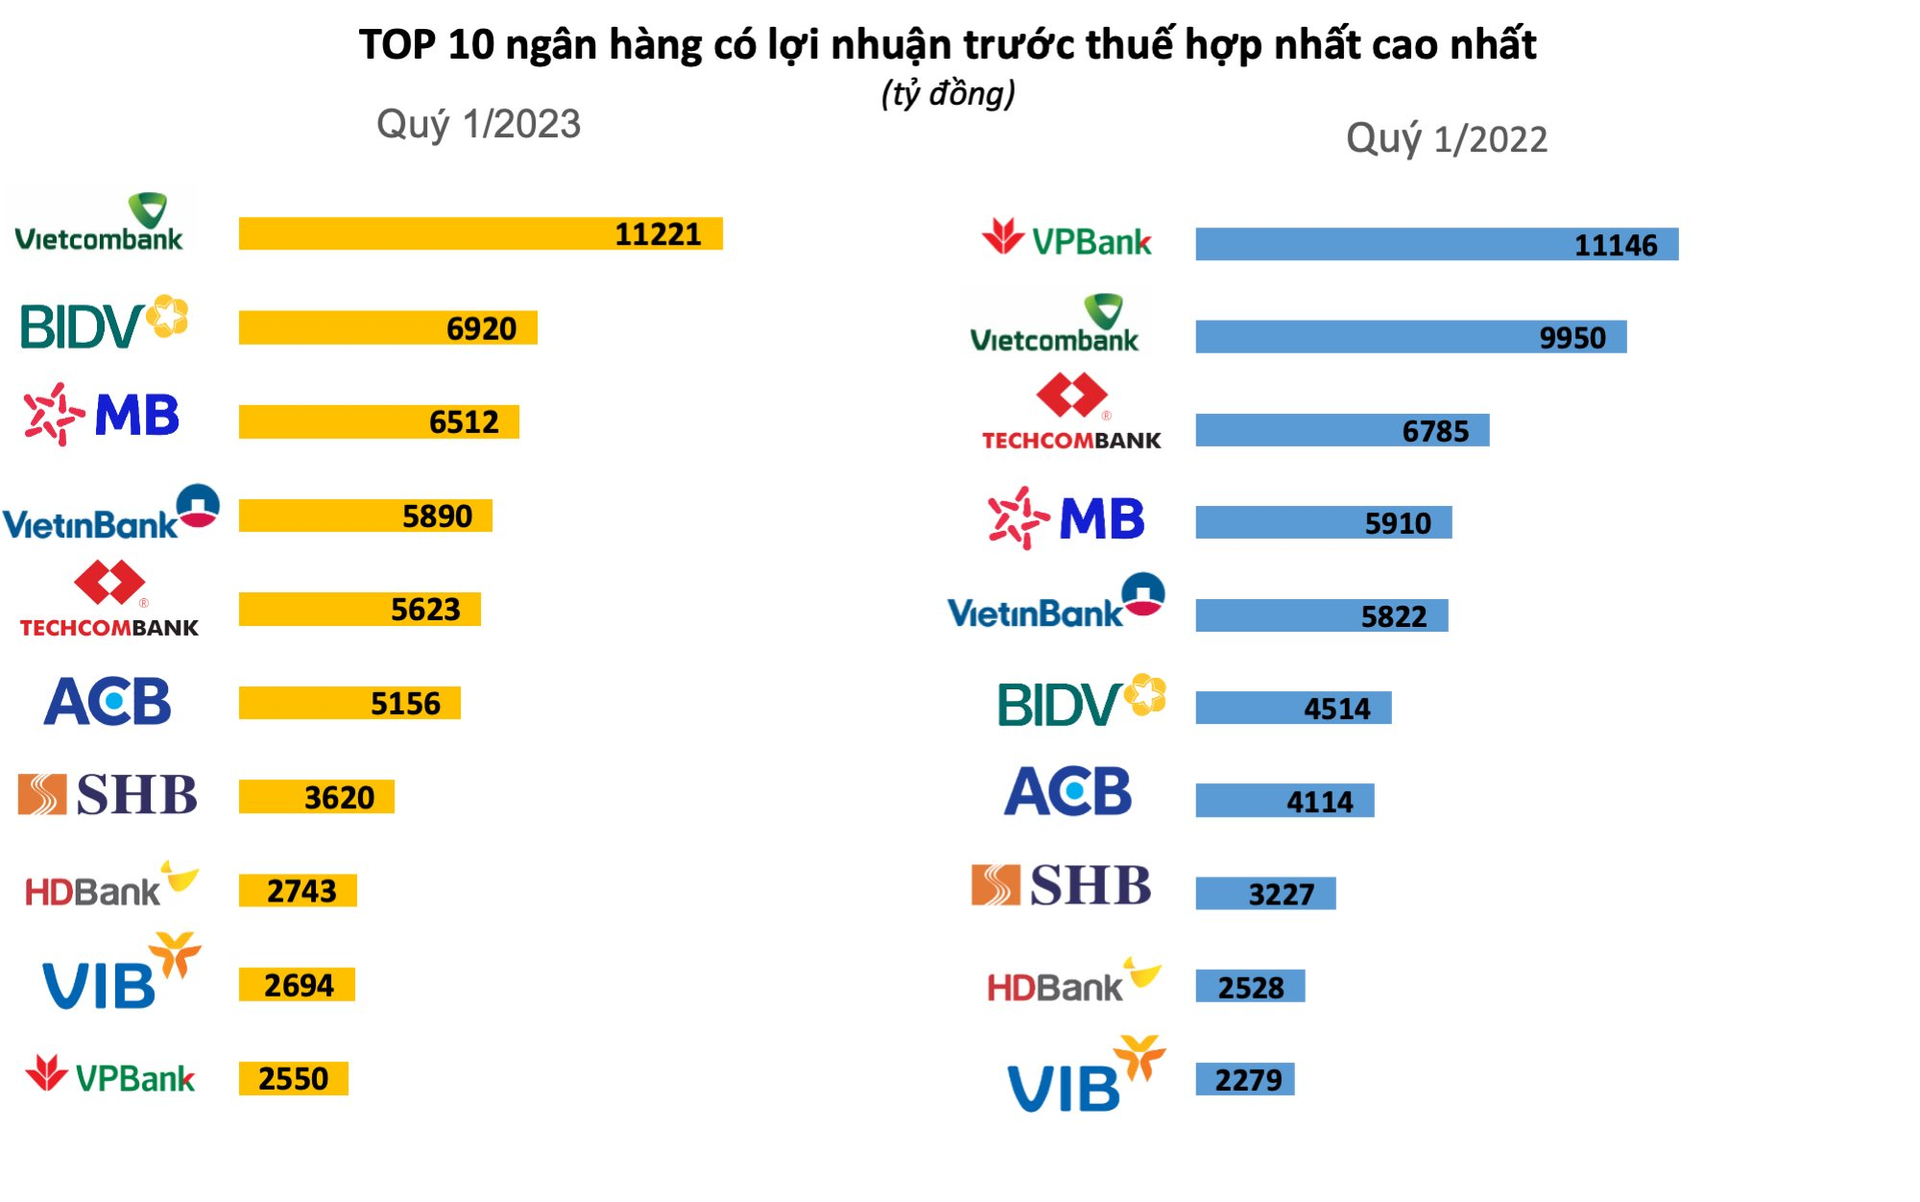 Lộ diện TOP 10 lợi nhuận ngân hàng quý 1/2023: Bất ngờ với vị trí “á quân”, không phải MB, cũng không phải Techcombank - Ảnh 2.